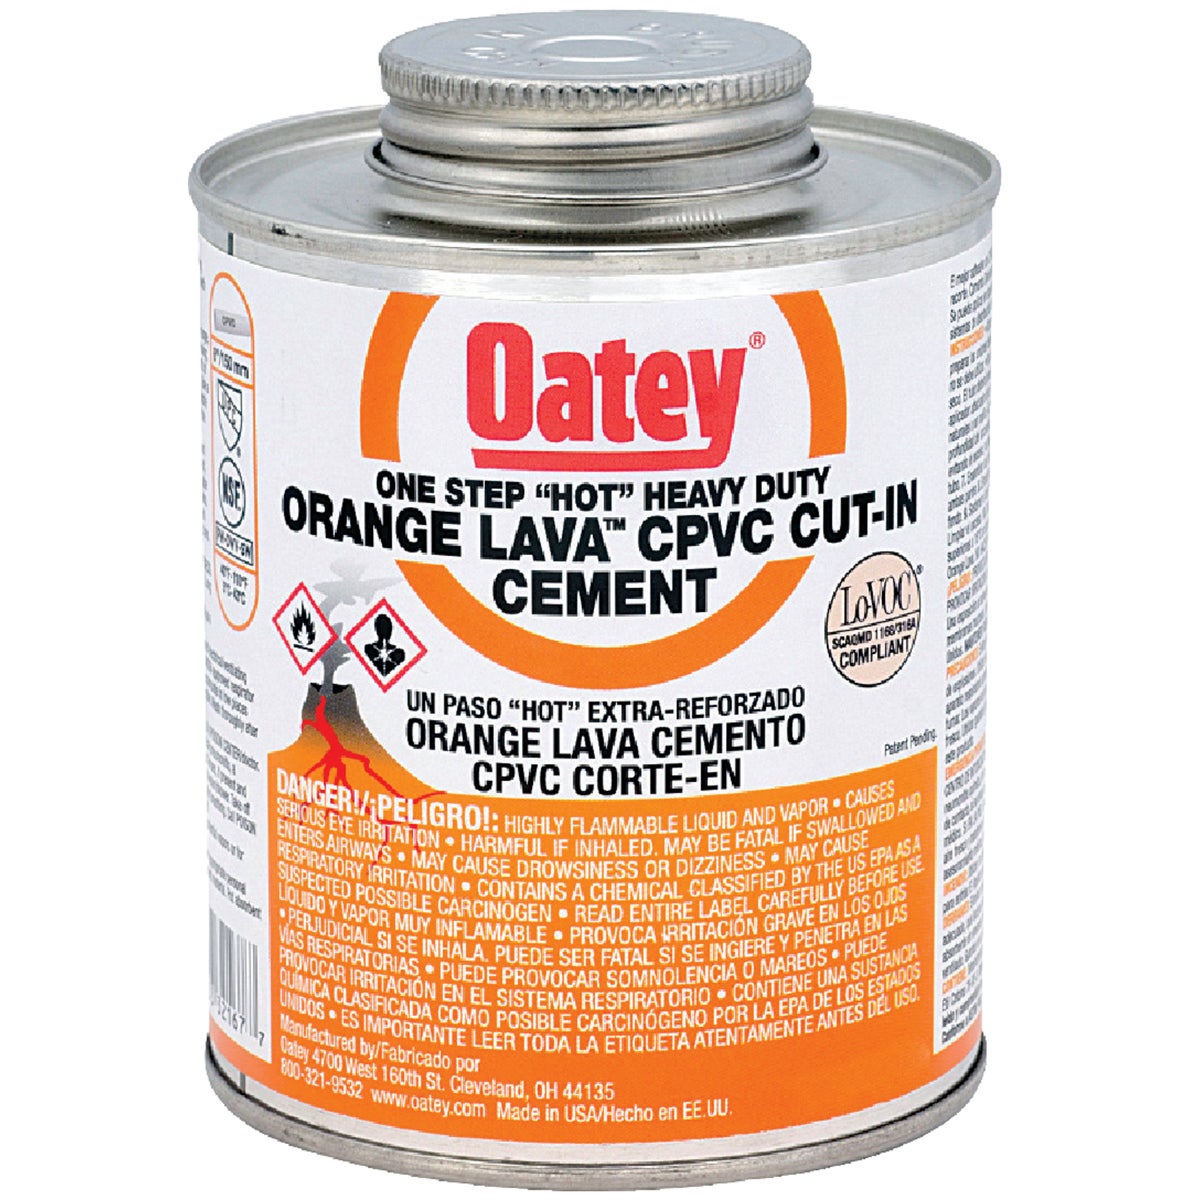 Oatey 16 Oz. Orange Lava One-Stop "Hot" Heavy-Duty CPVC Cement